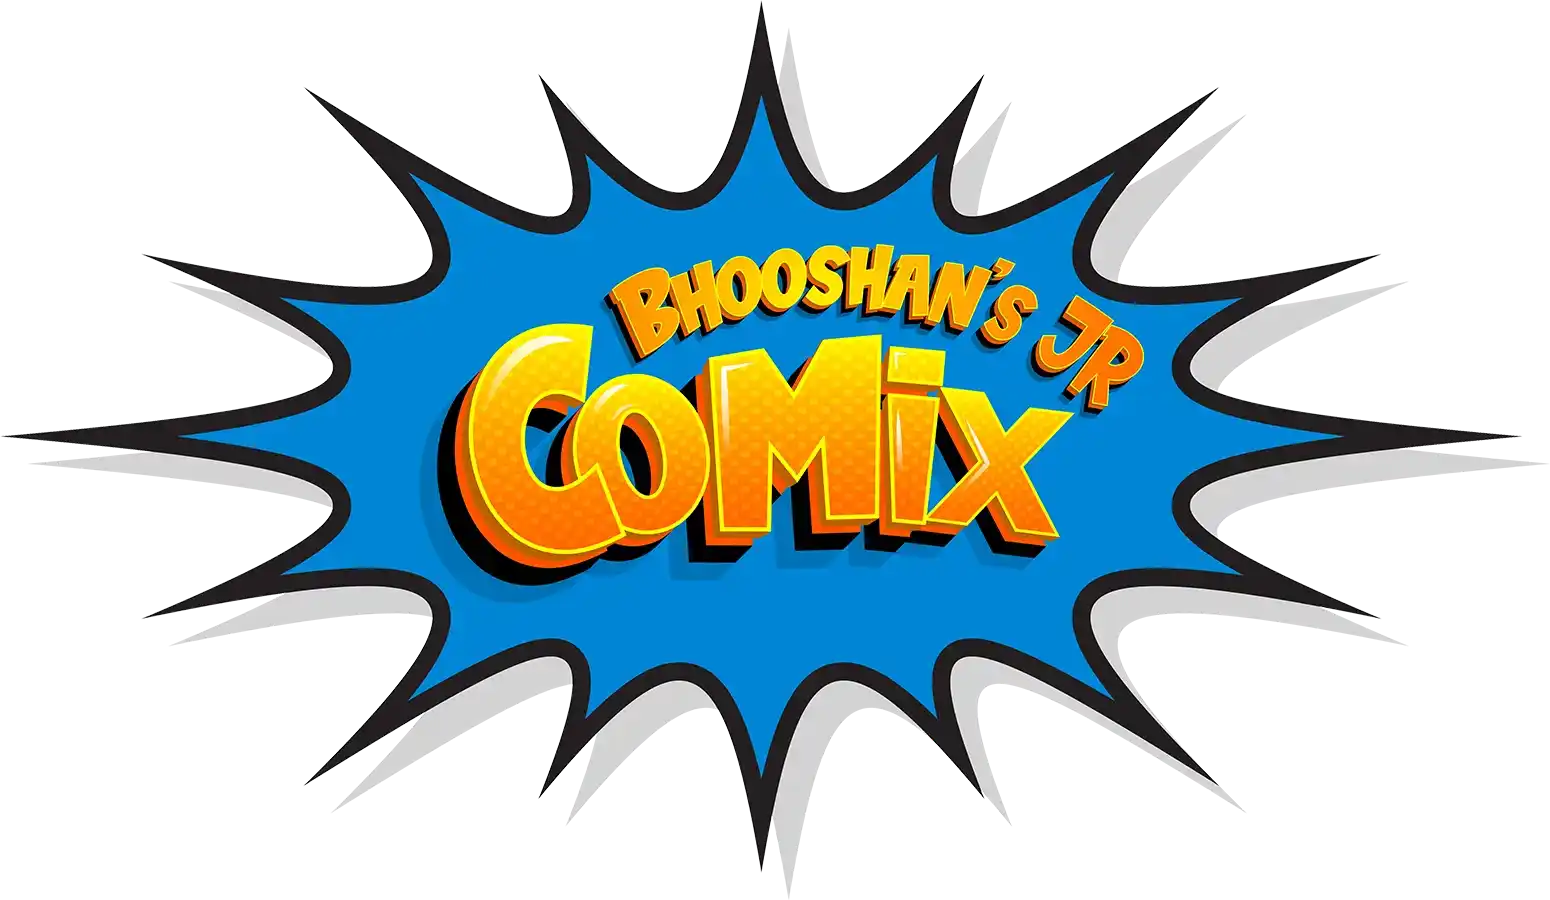 Bhooshans junior comics logo